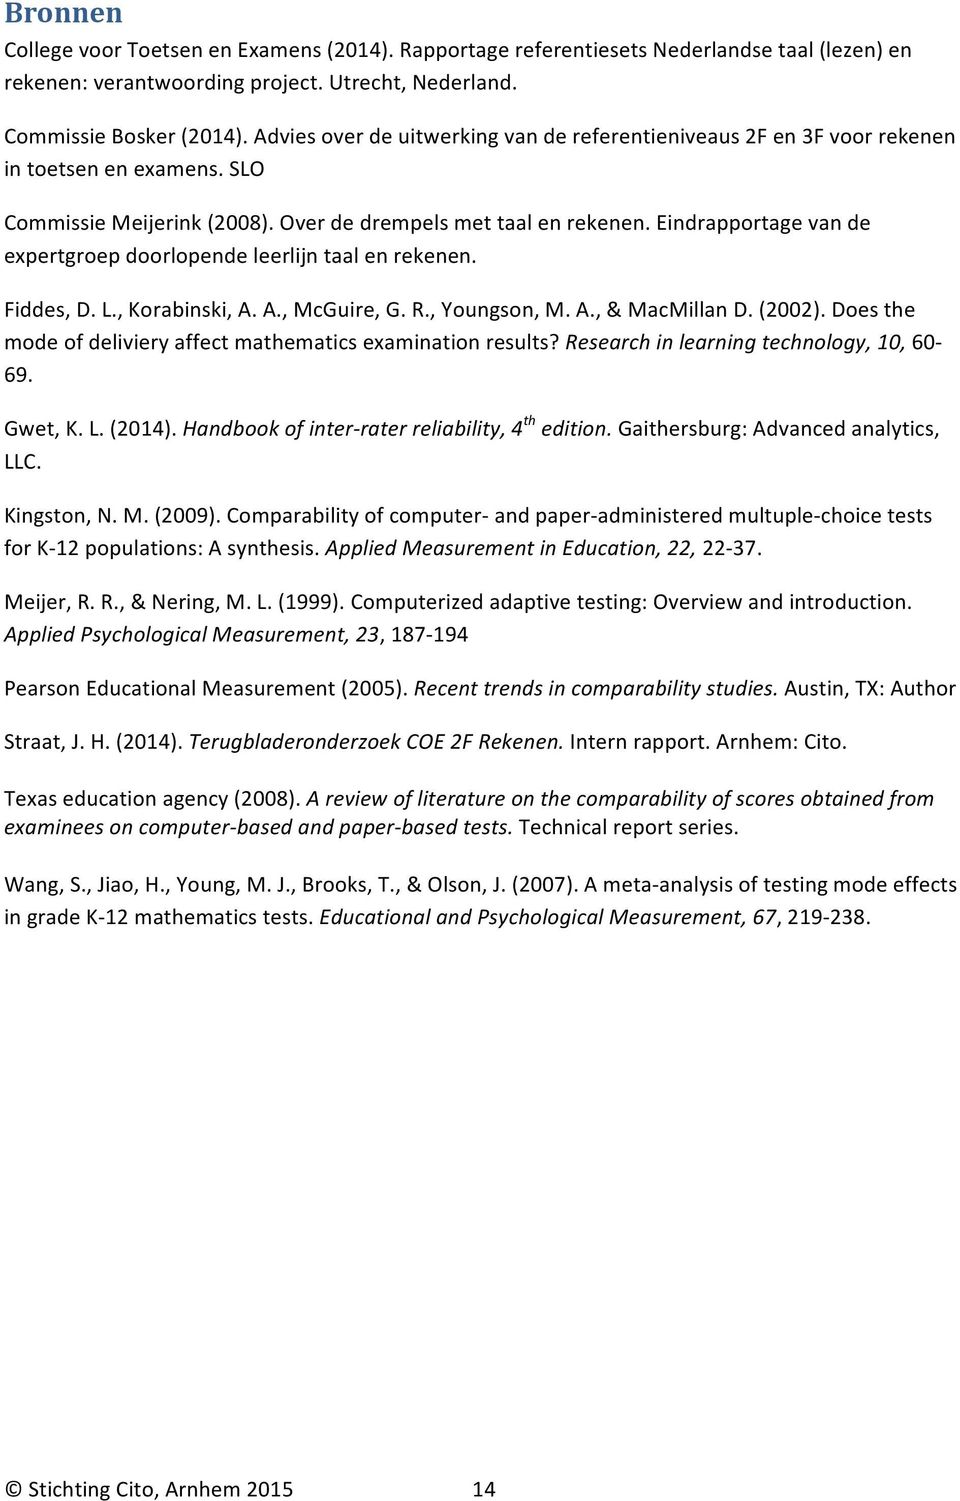 Eindrapportage van de expertgroep doorlopende leerlijn taal en rekenen. Fiddes, D. L., Korabinski, A. A., McGuire, G. R., Youngson, M. A., & MacMillan D. (2002).